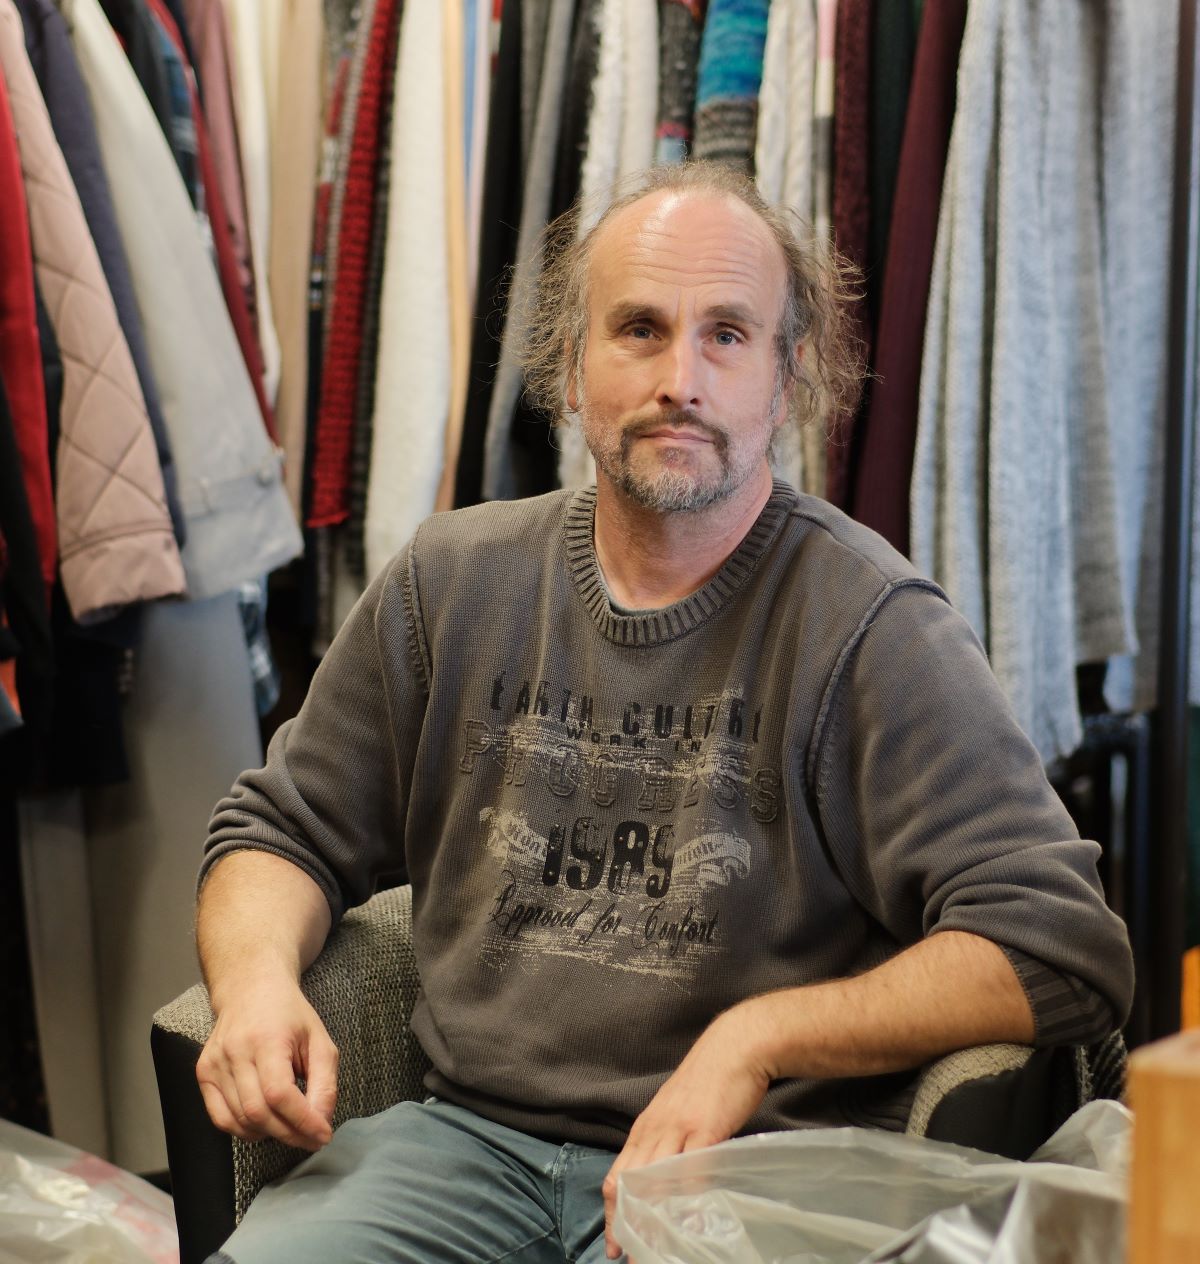 Ein Mann mit lichtem Haar und Schnäuzer sitzt auf einem Stuhl hinter ihm sind Kleiderstangen mit Jacken und Mäntel zu erkennen.